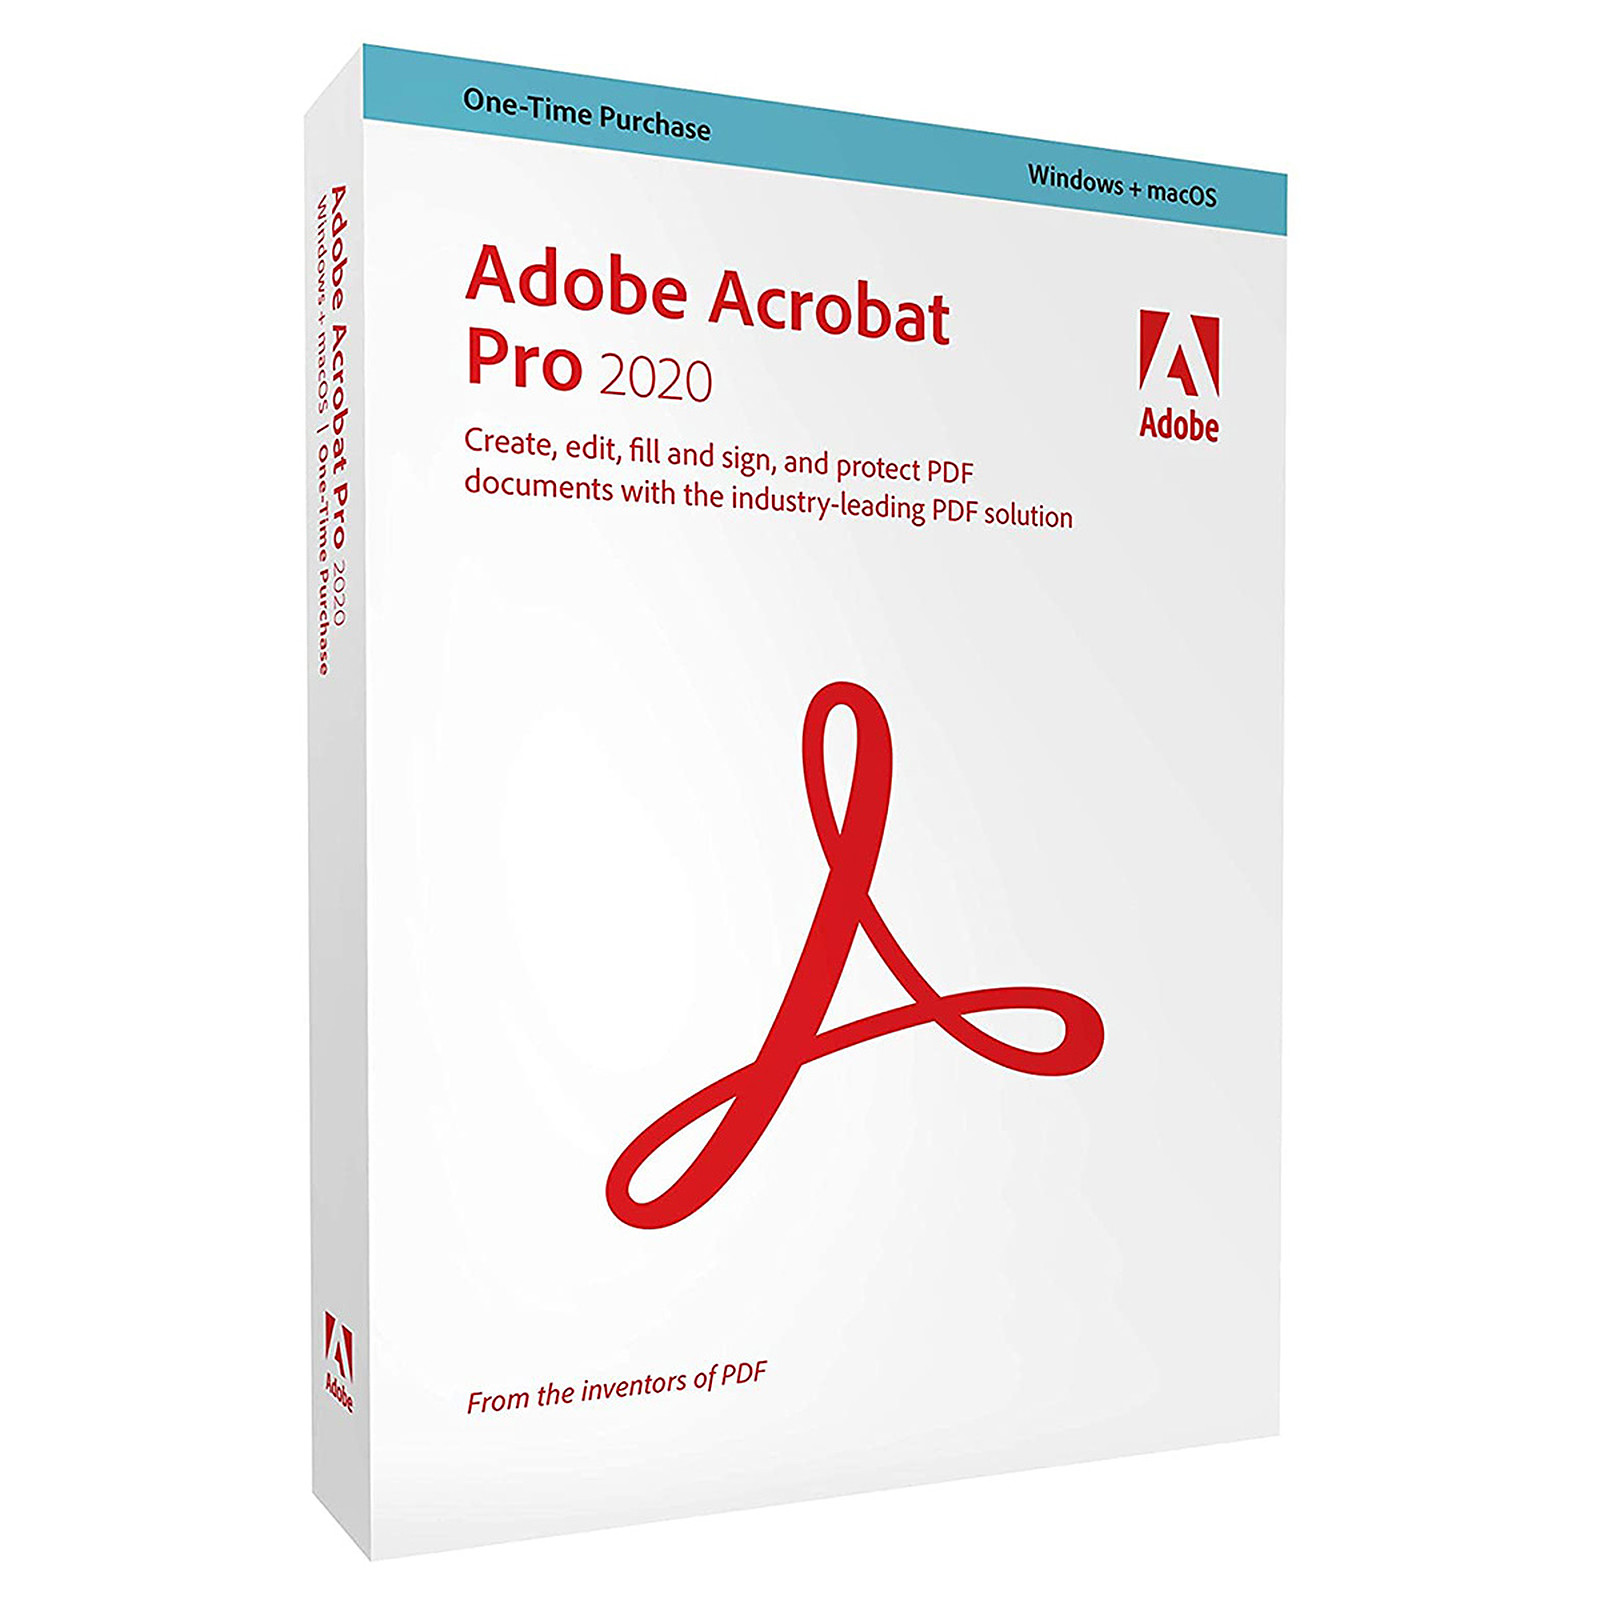 Adobe Acrobat Pro 2020 - Version boîte - 1 utilisateur - Win, Mac - français - 65310804 - Logiciels graphiques et de publication